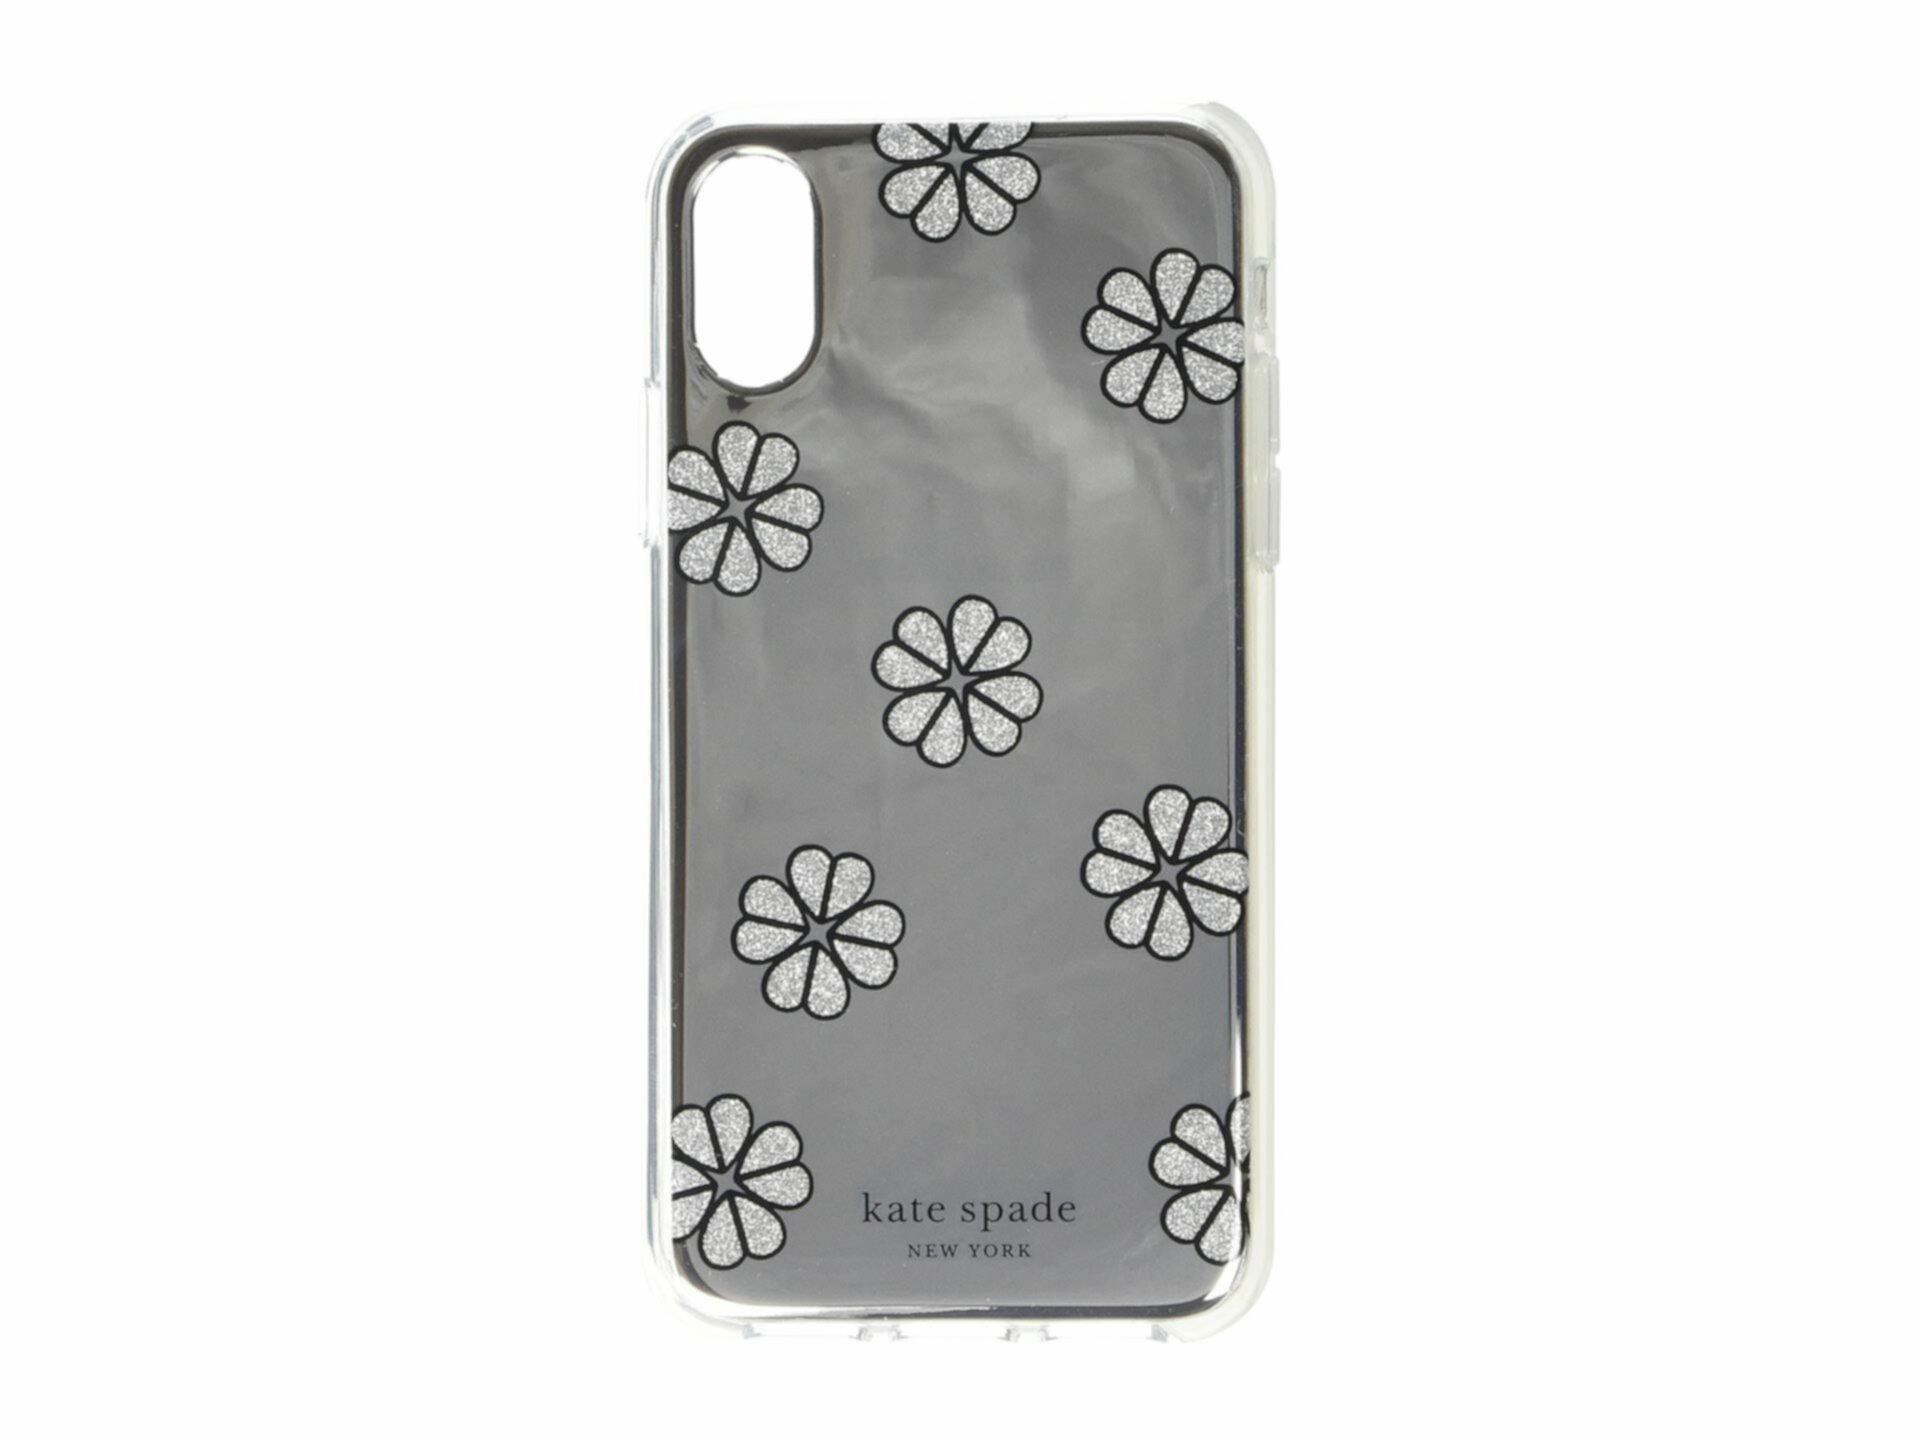 Чехол для телефона с зеркалом Spade Flower для iPhone XS Kate Spade New York